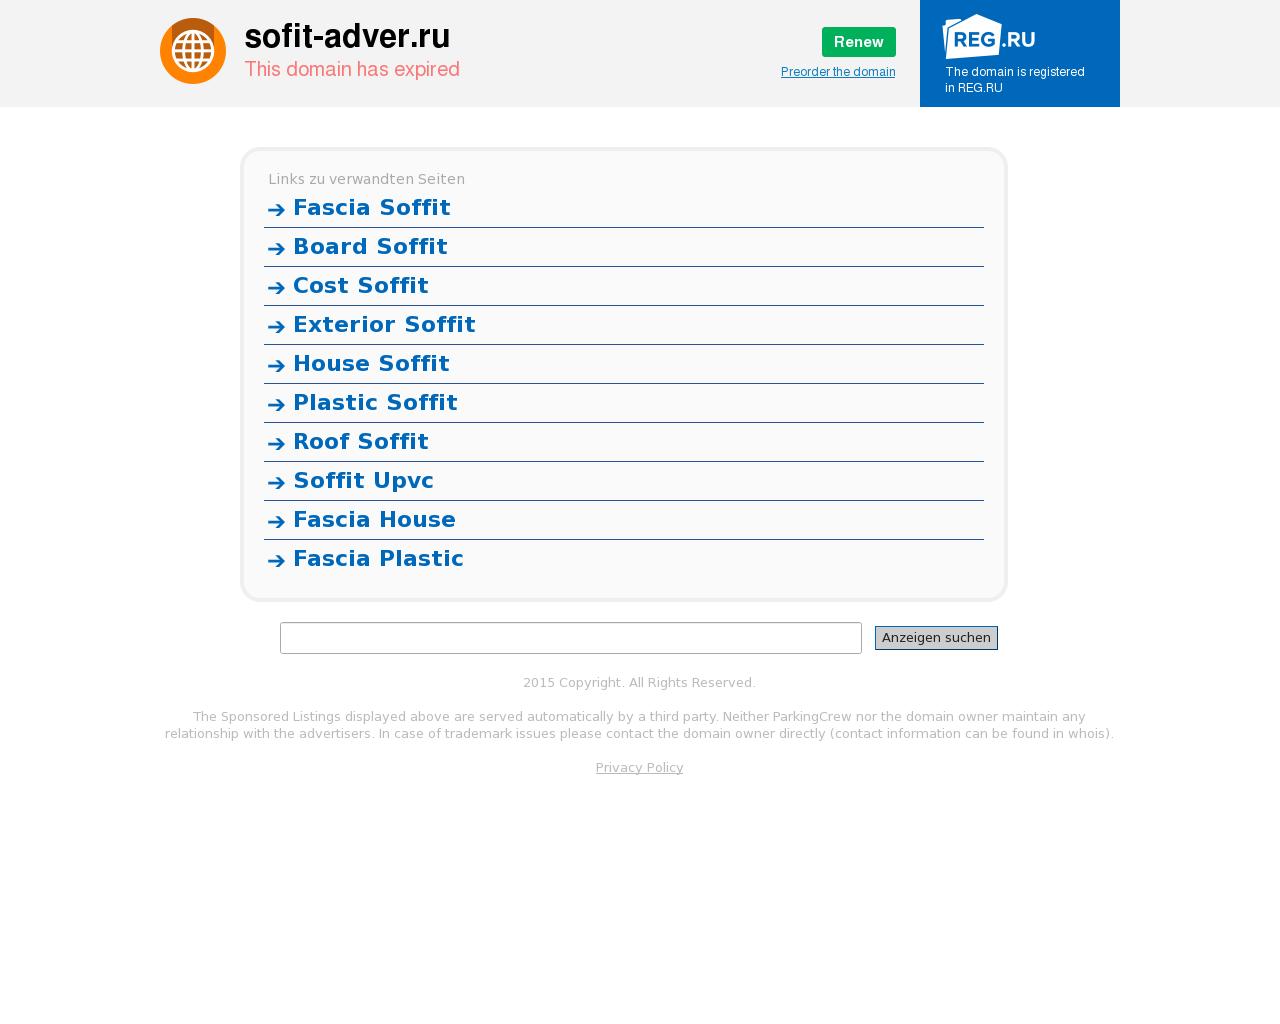 Изображение сайта sofit-adver.ru в разрешении 1280x1024